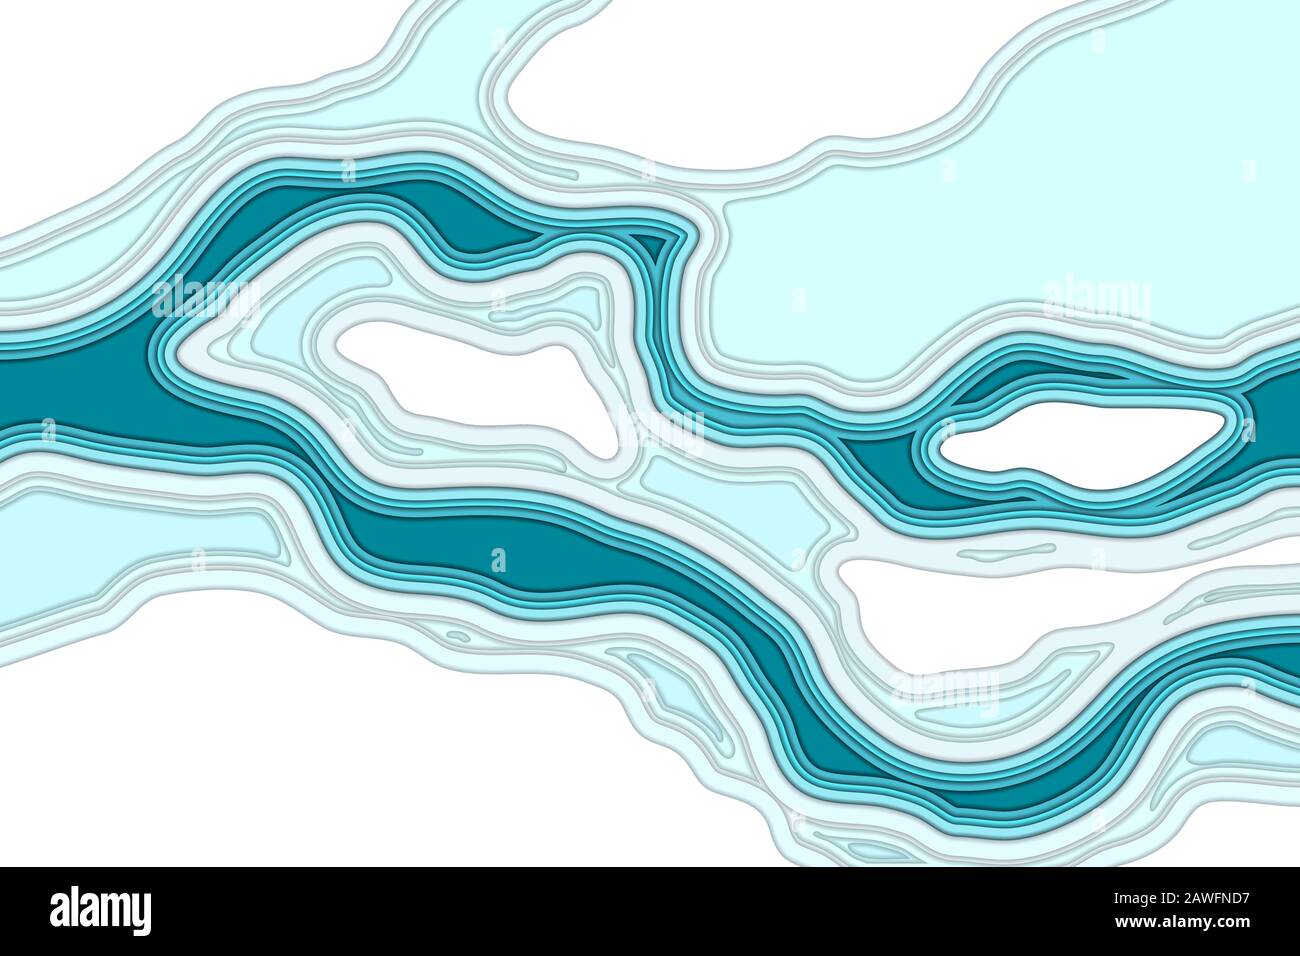 La rivière Frosen dans l'illustration vectorielle de la vue aérienne de la glace Illustration de Vecteur